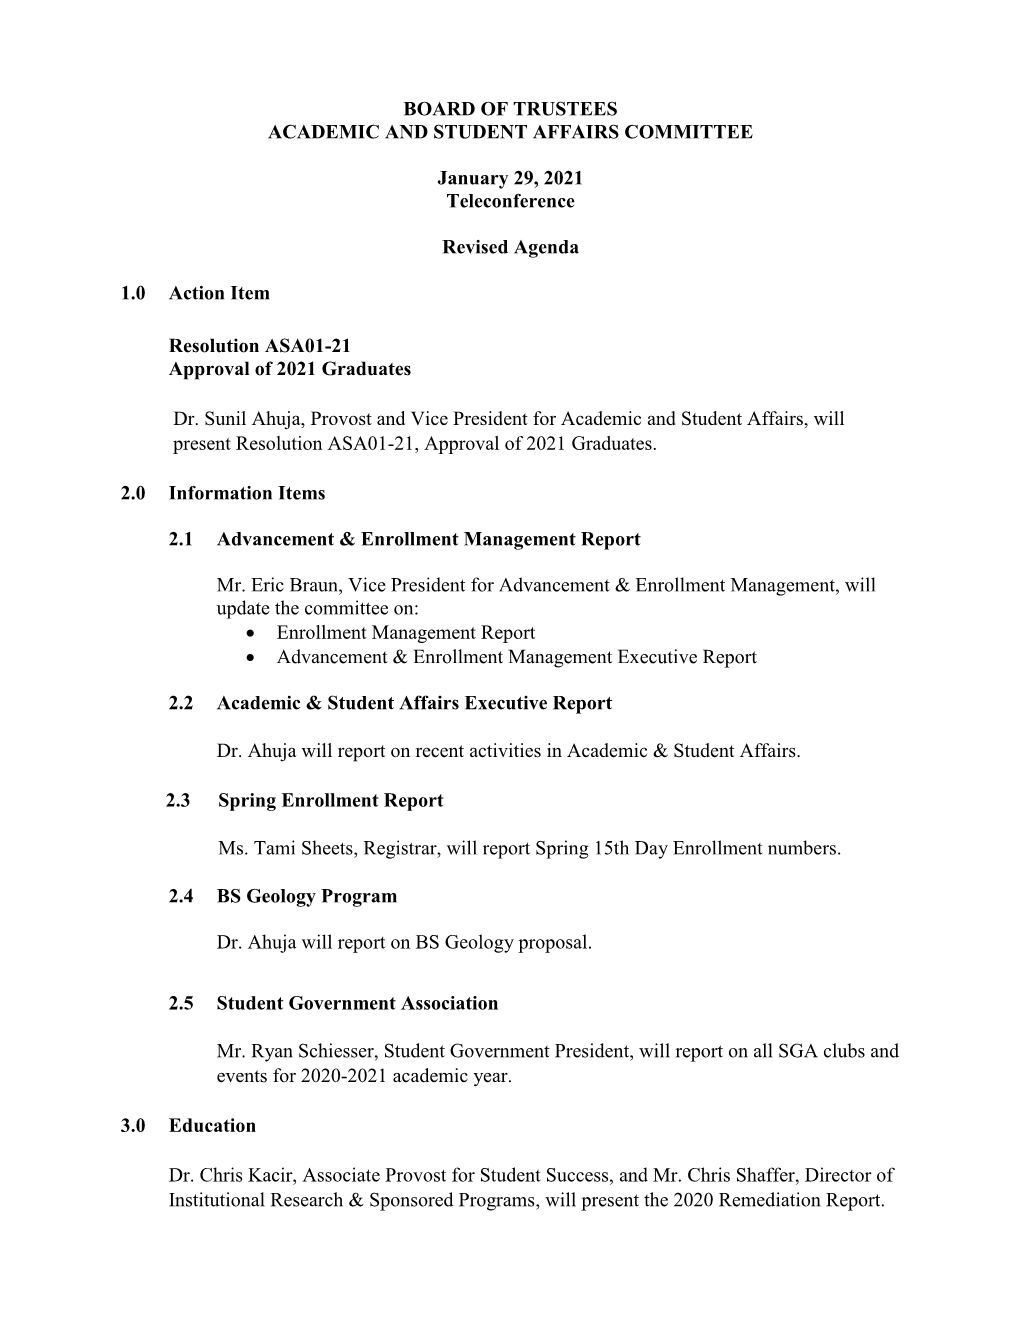 ASA Committee Agenda January 29, 2021